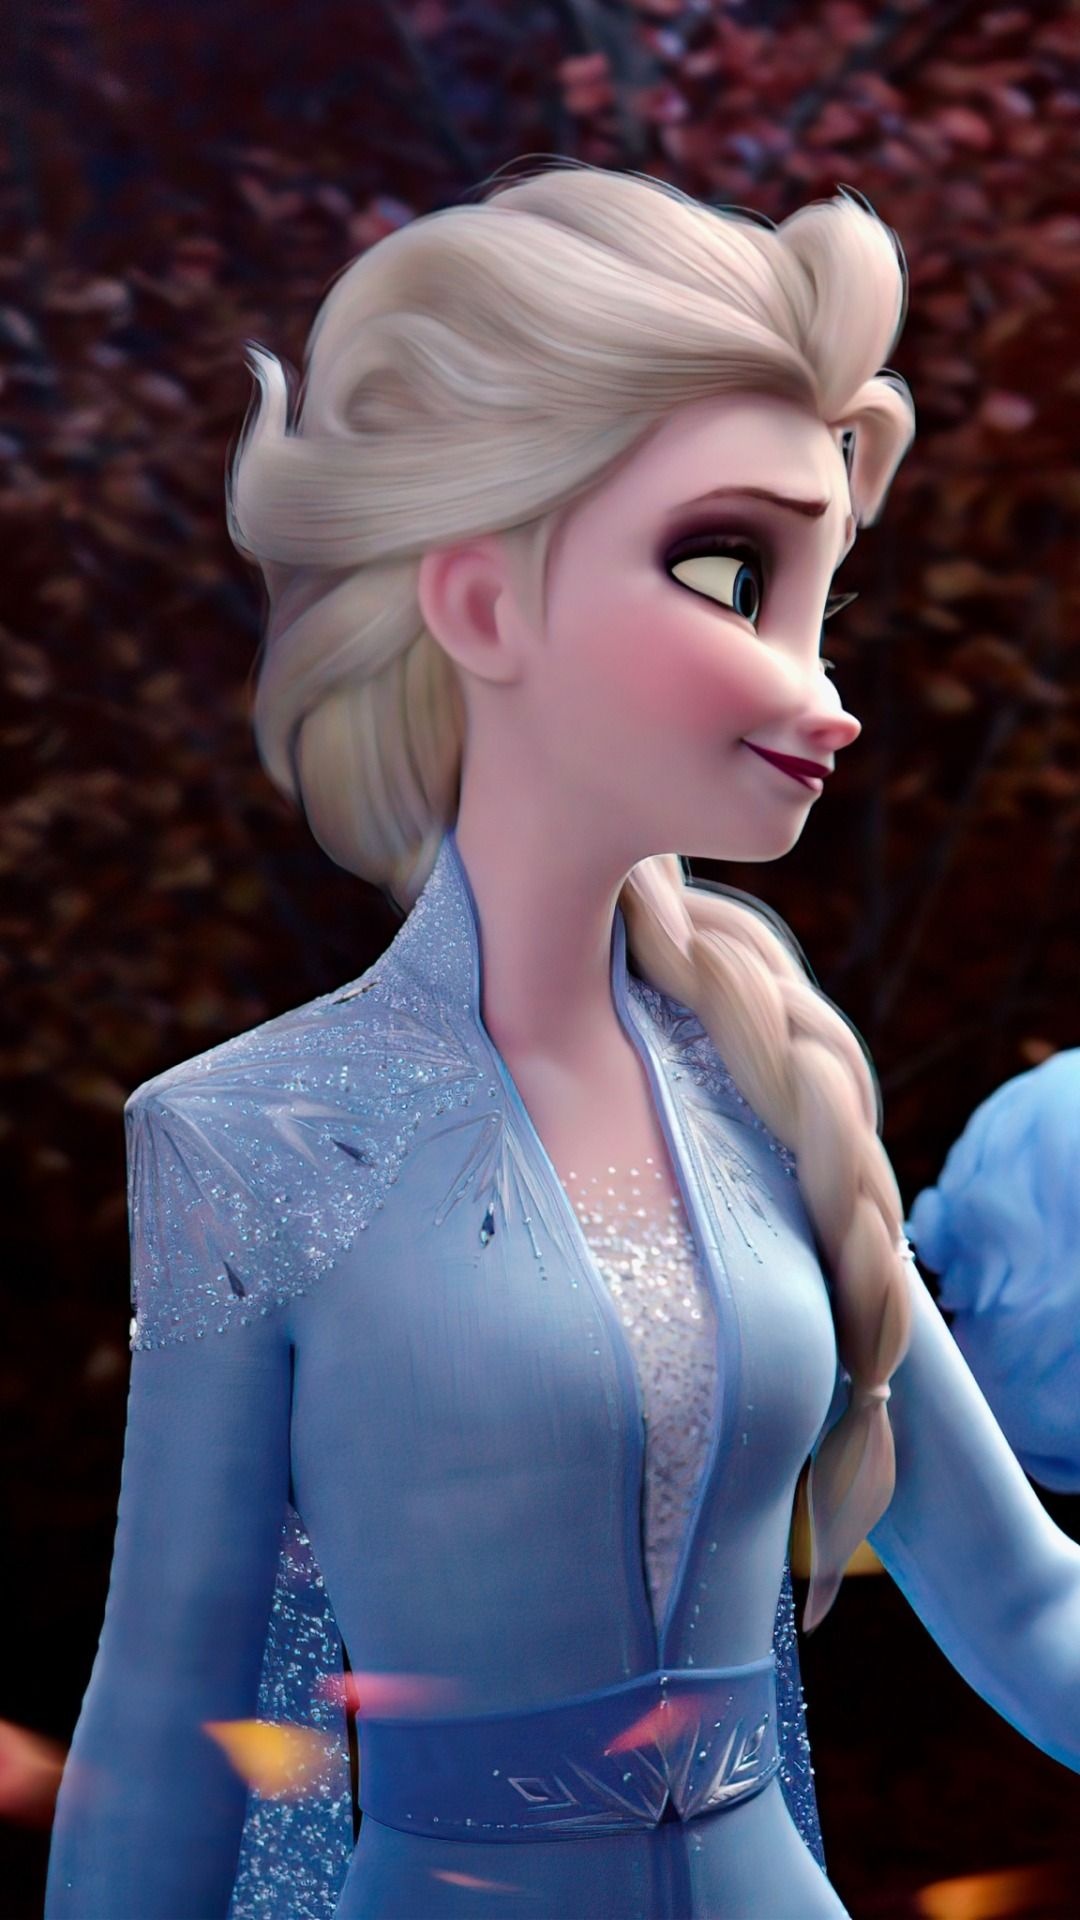 Frozen Walt Disney Images 1080x1920.